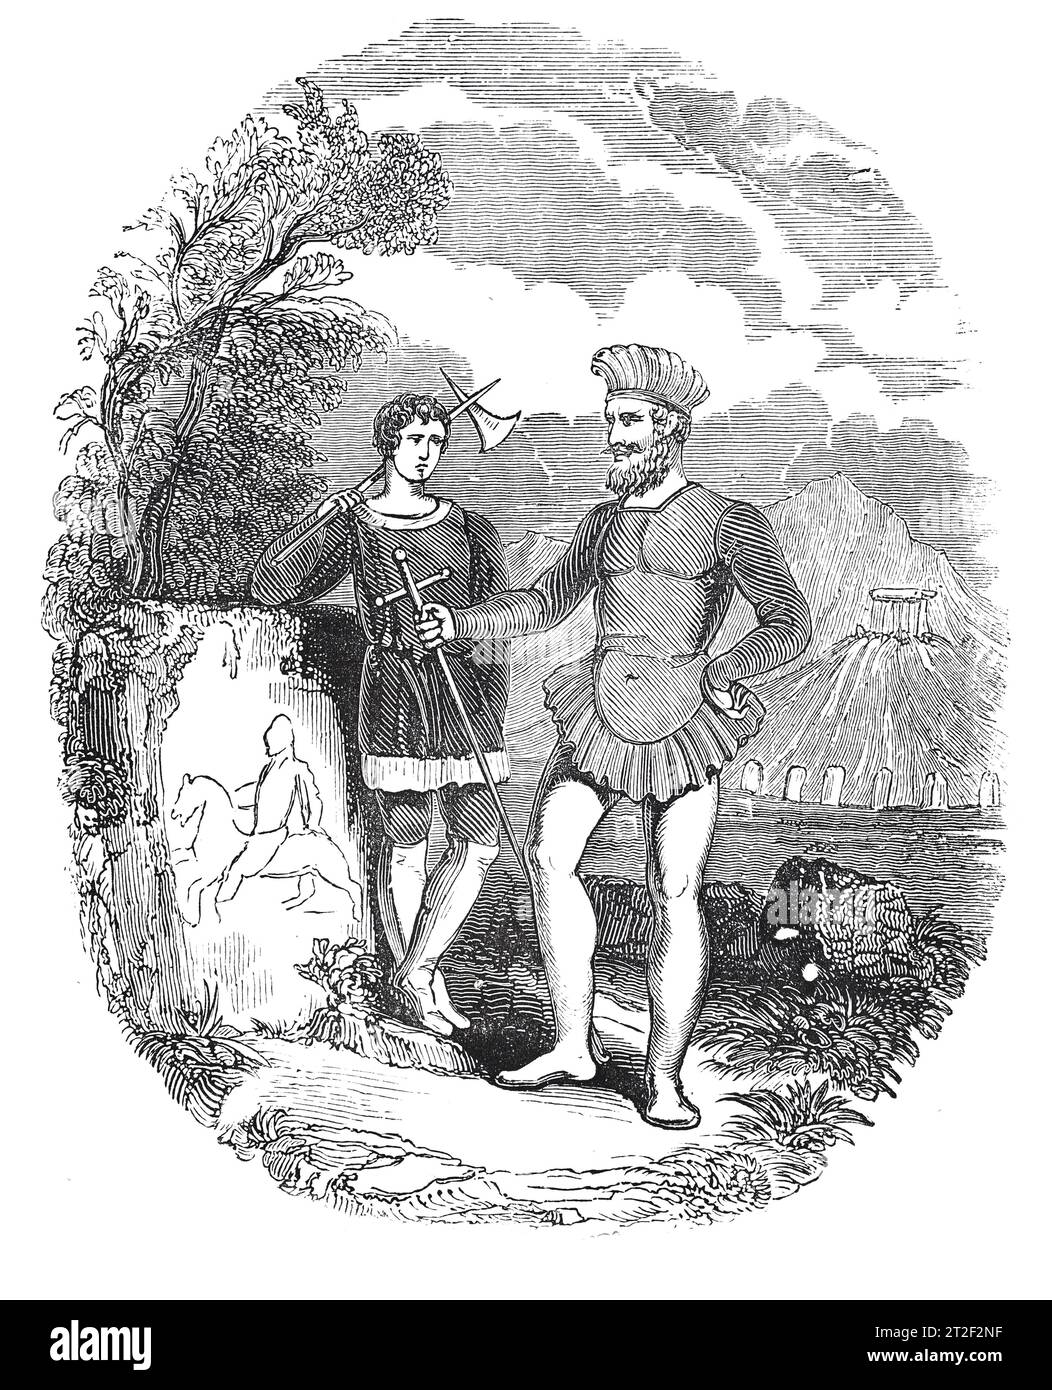 Armes et costumes des guerriers danois. Illustration en noir et blanc de la 'Vieille Angleterre' publiée par James Sangster en 1860. Banque D'Images